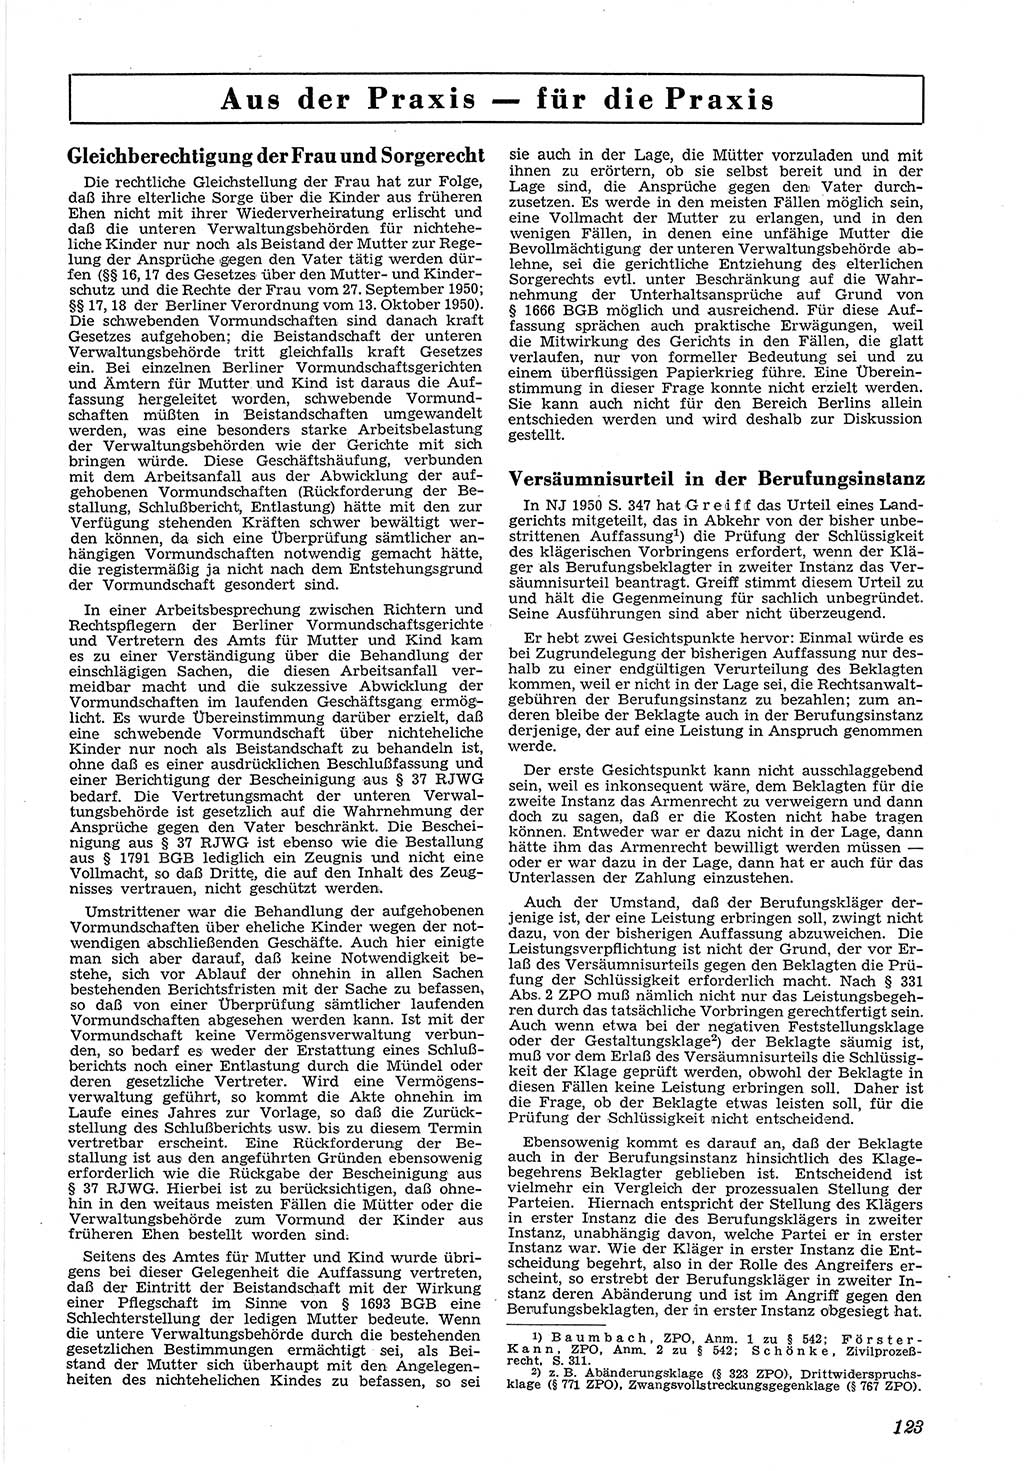 Neue Justiz (NJ), Zeitschrift für Recht und Rechtswissenschaft [Deutsche Demokratische Republik (DDR)], 5. Jahrgang 1951, Seite 123 (NJ DDR 1951, S. 123)